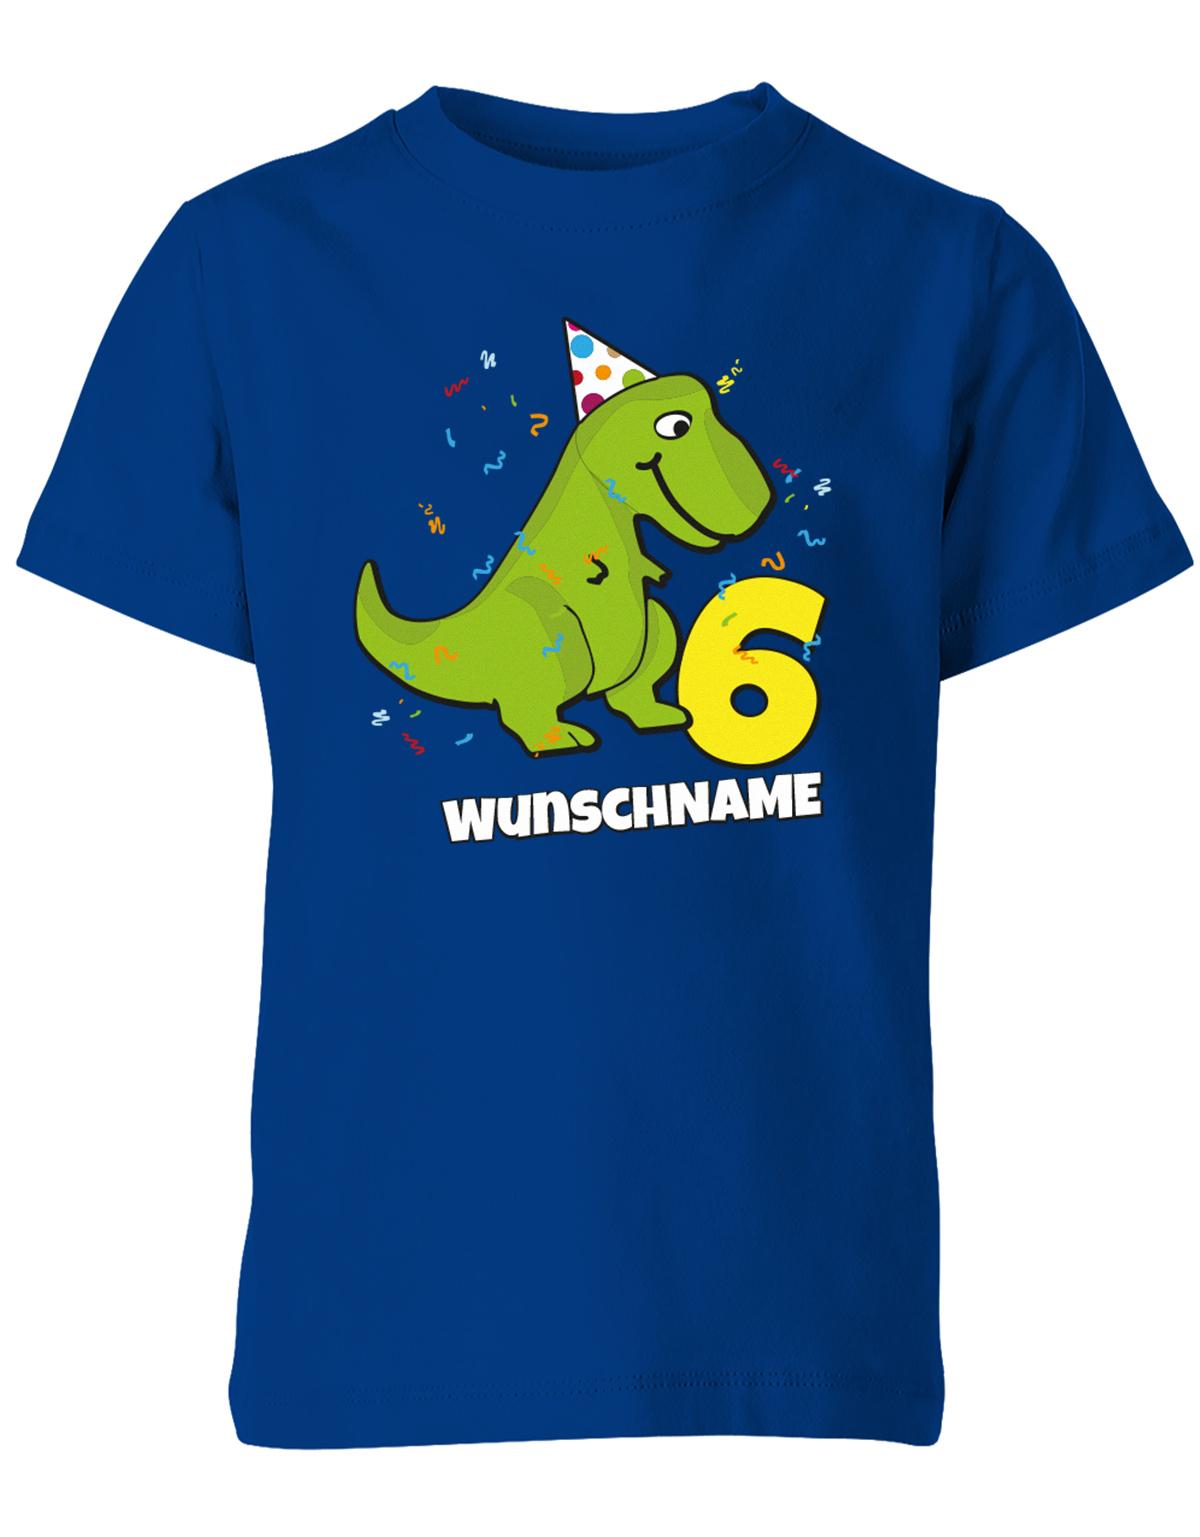 ich-bin-6-Dinosaurier-t-rex-wunschname-geburtstag-kinder-shirt-royalblau